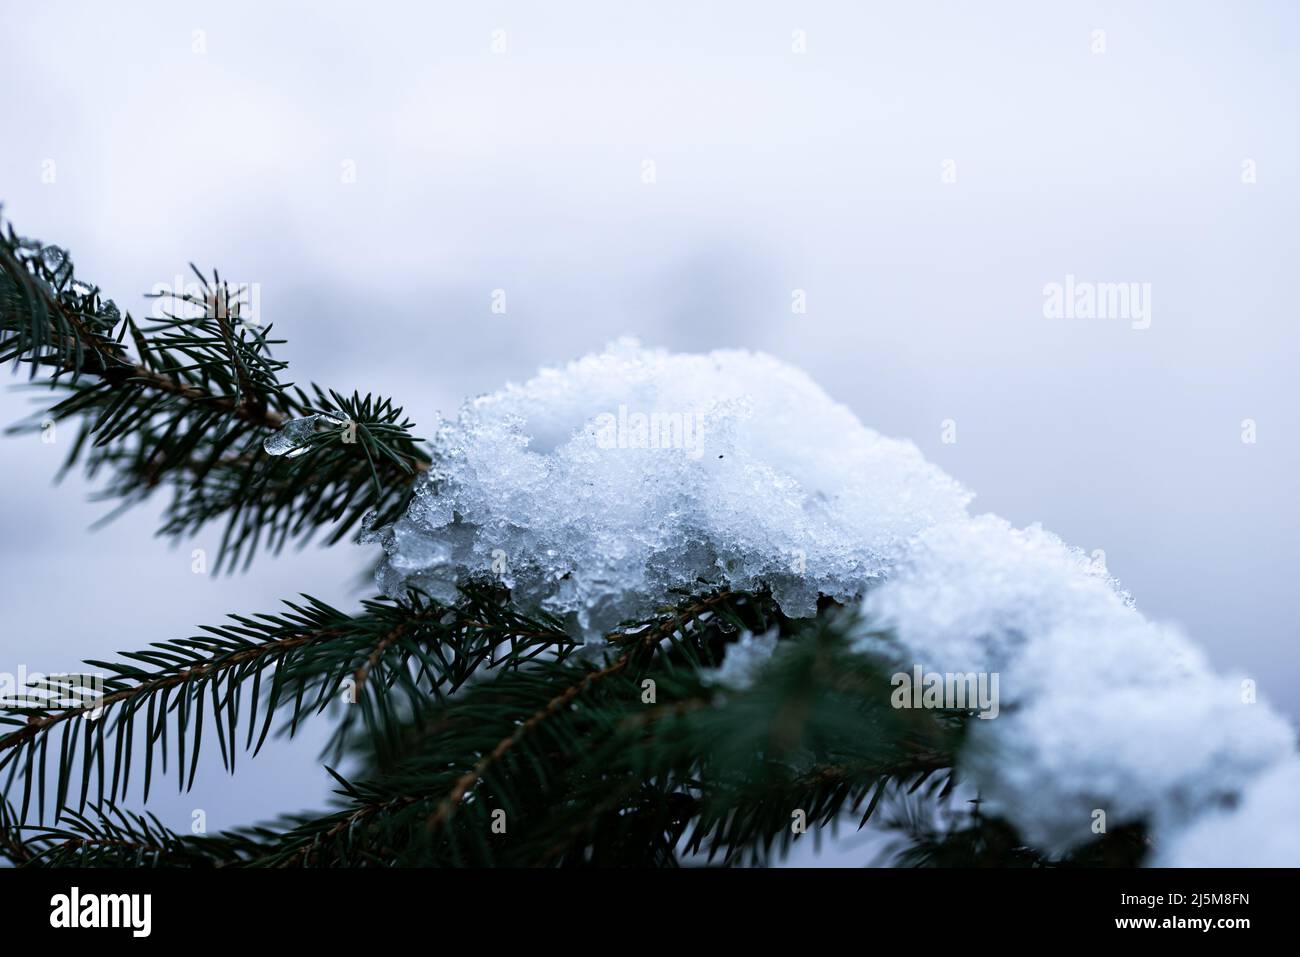 el primer plano extremo de la nieve que se derrite en una rama del árbol Foto de stock